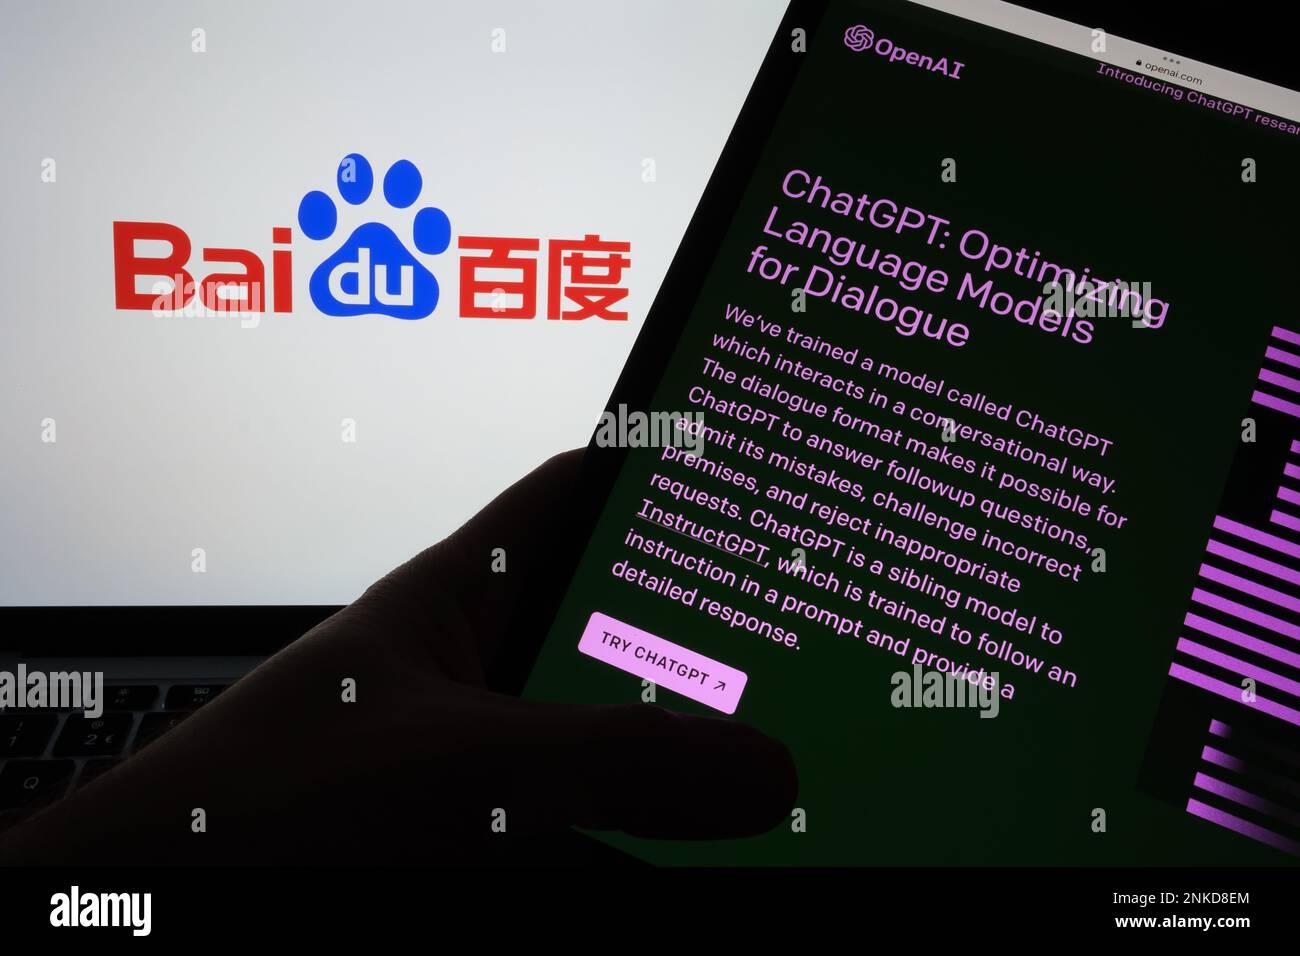 ChatGPT-Chat bot-Anmeldebildschirm auf Tablet und verwischtes Baidu-Firmenlogo auf dem Notebook im Hintergrund. Konzept für den Wettbewerb. Stafford, Vereinigtes Königreich Stockfoto